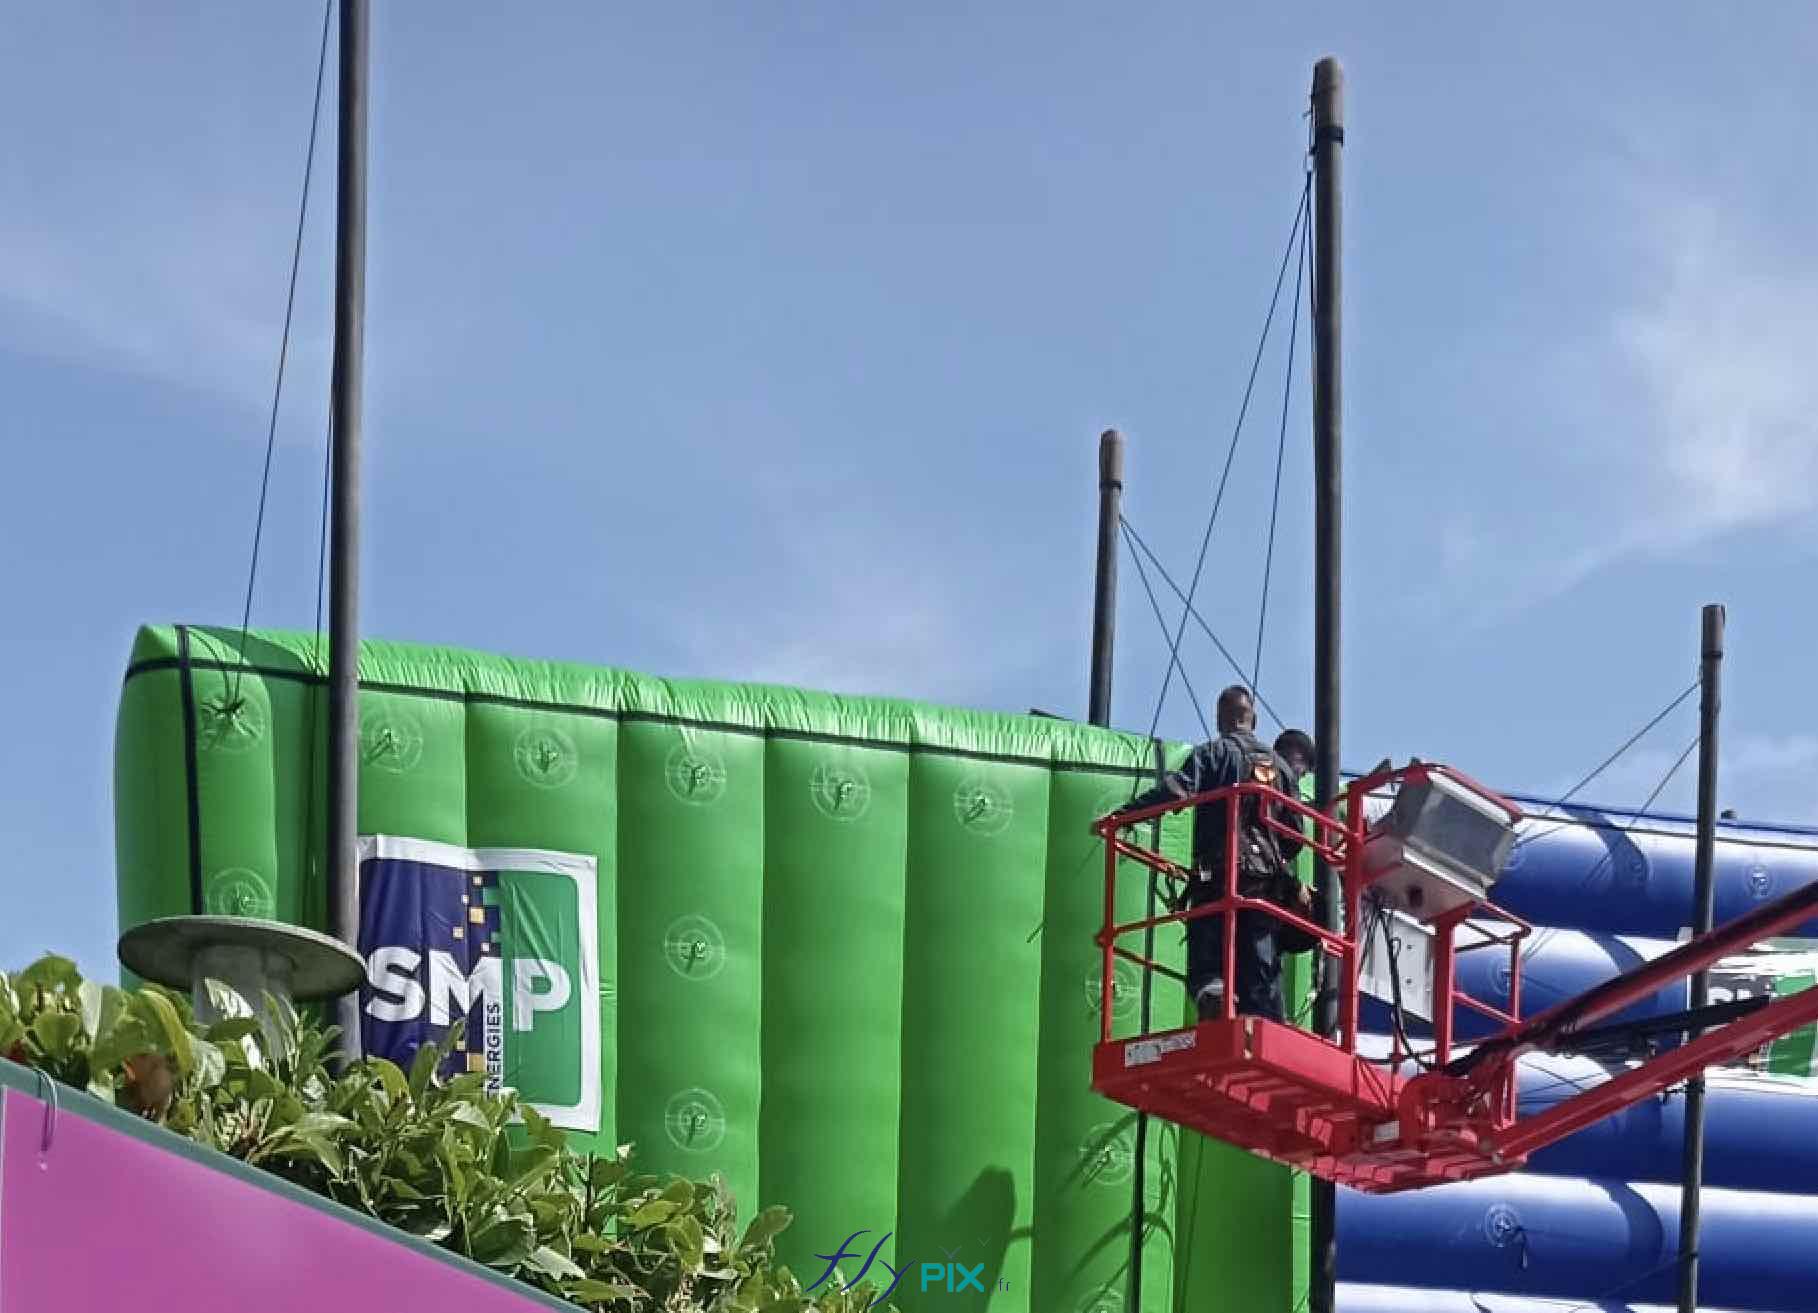 Des techniciens au sommet d'une nacelle sont entrain de manœuvrer pour faire l'installation des murs gonflables de réduction de bruits sur le chantier de SMP Drilling / SMP Energies.